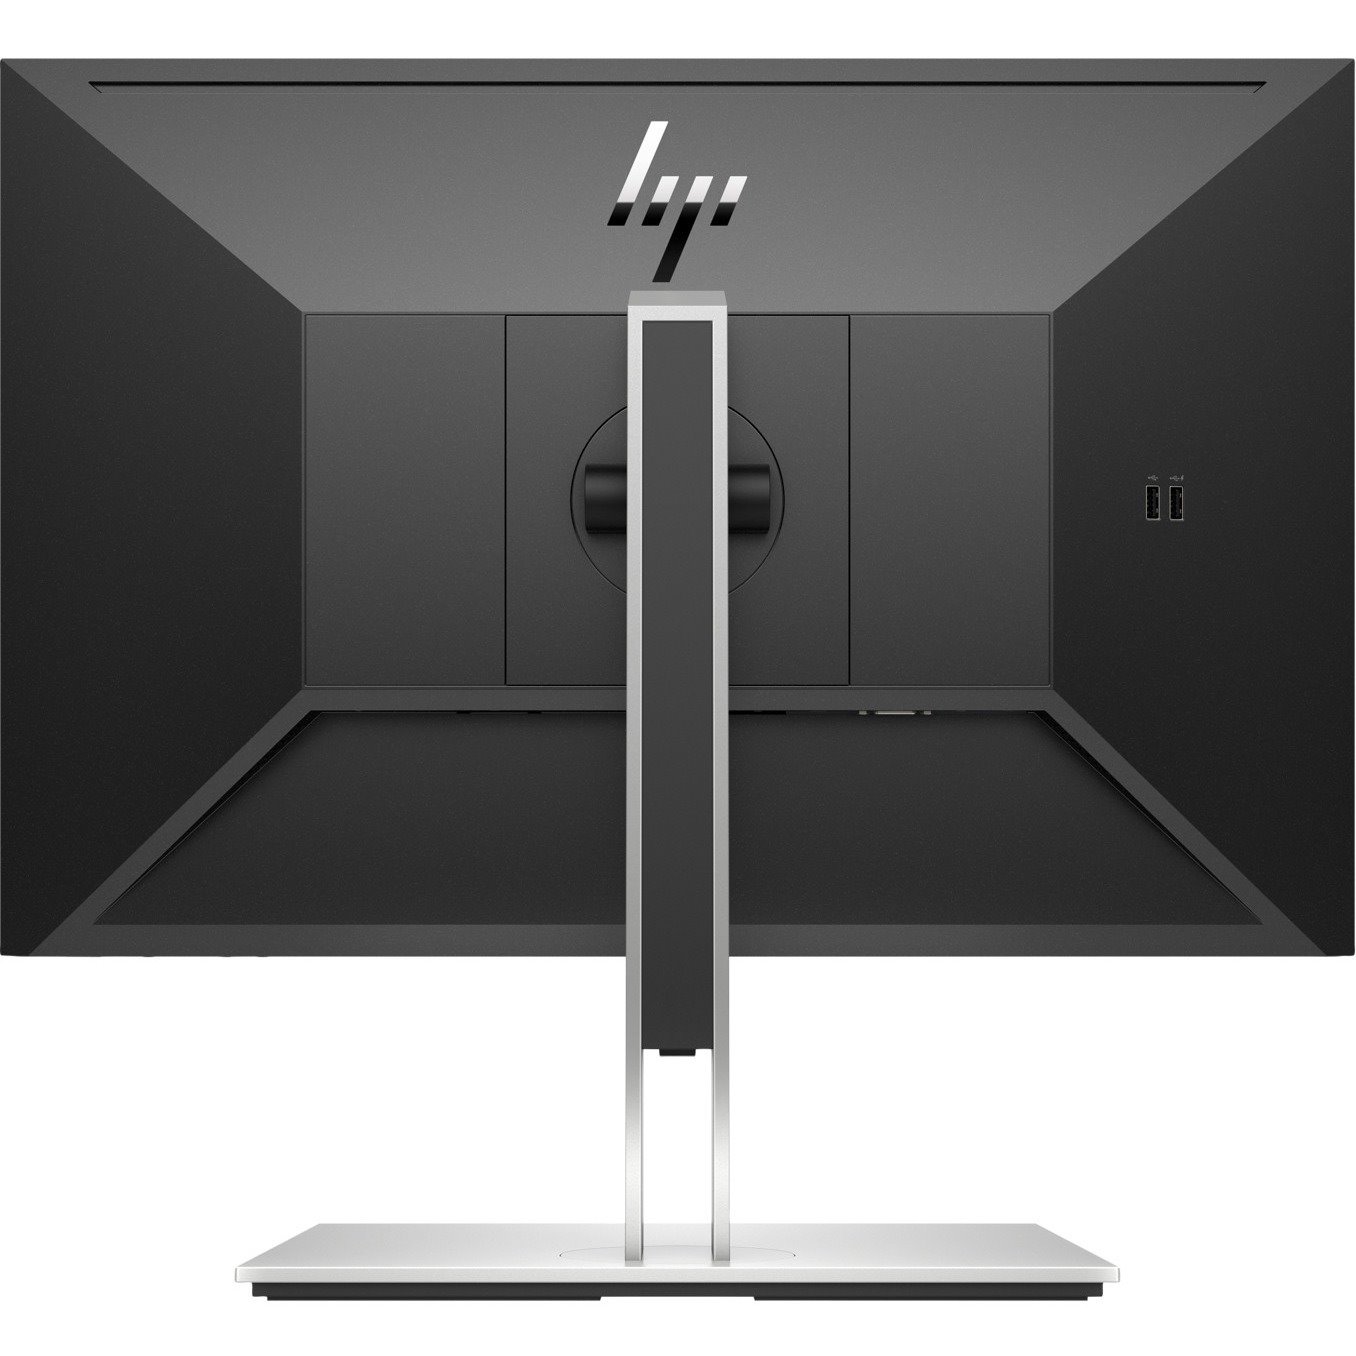 HP E24i G4 24" Class WUXGA LCD Monitor - 16:10 - Black